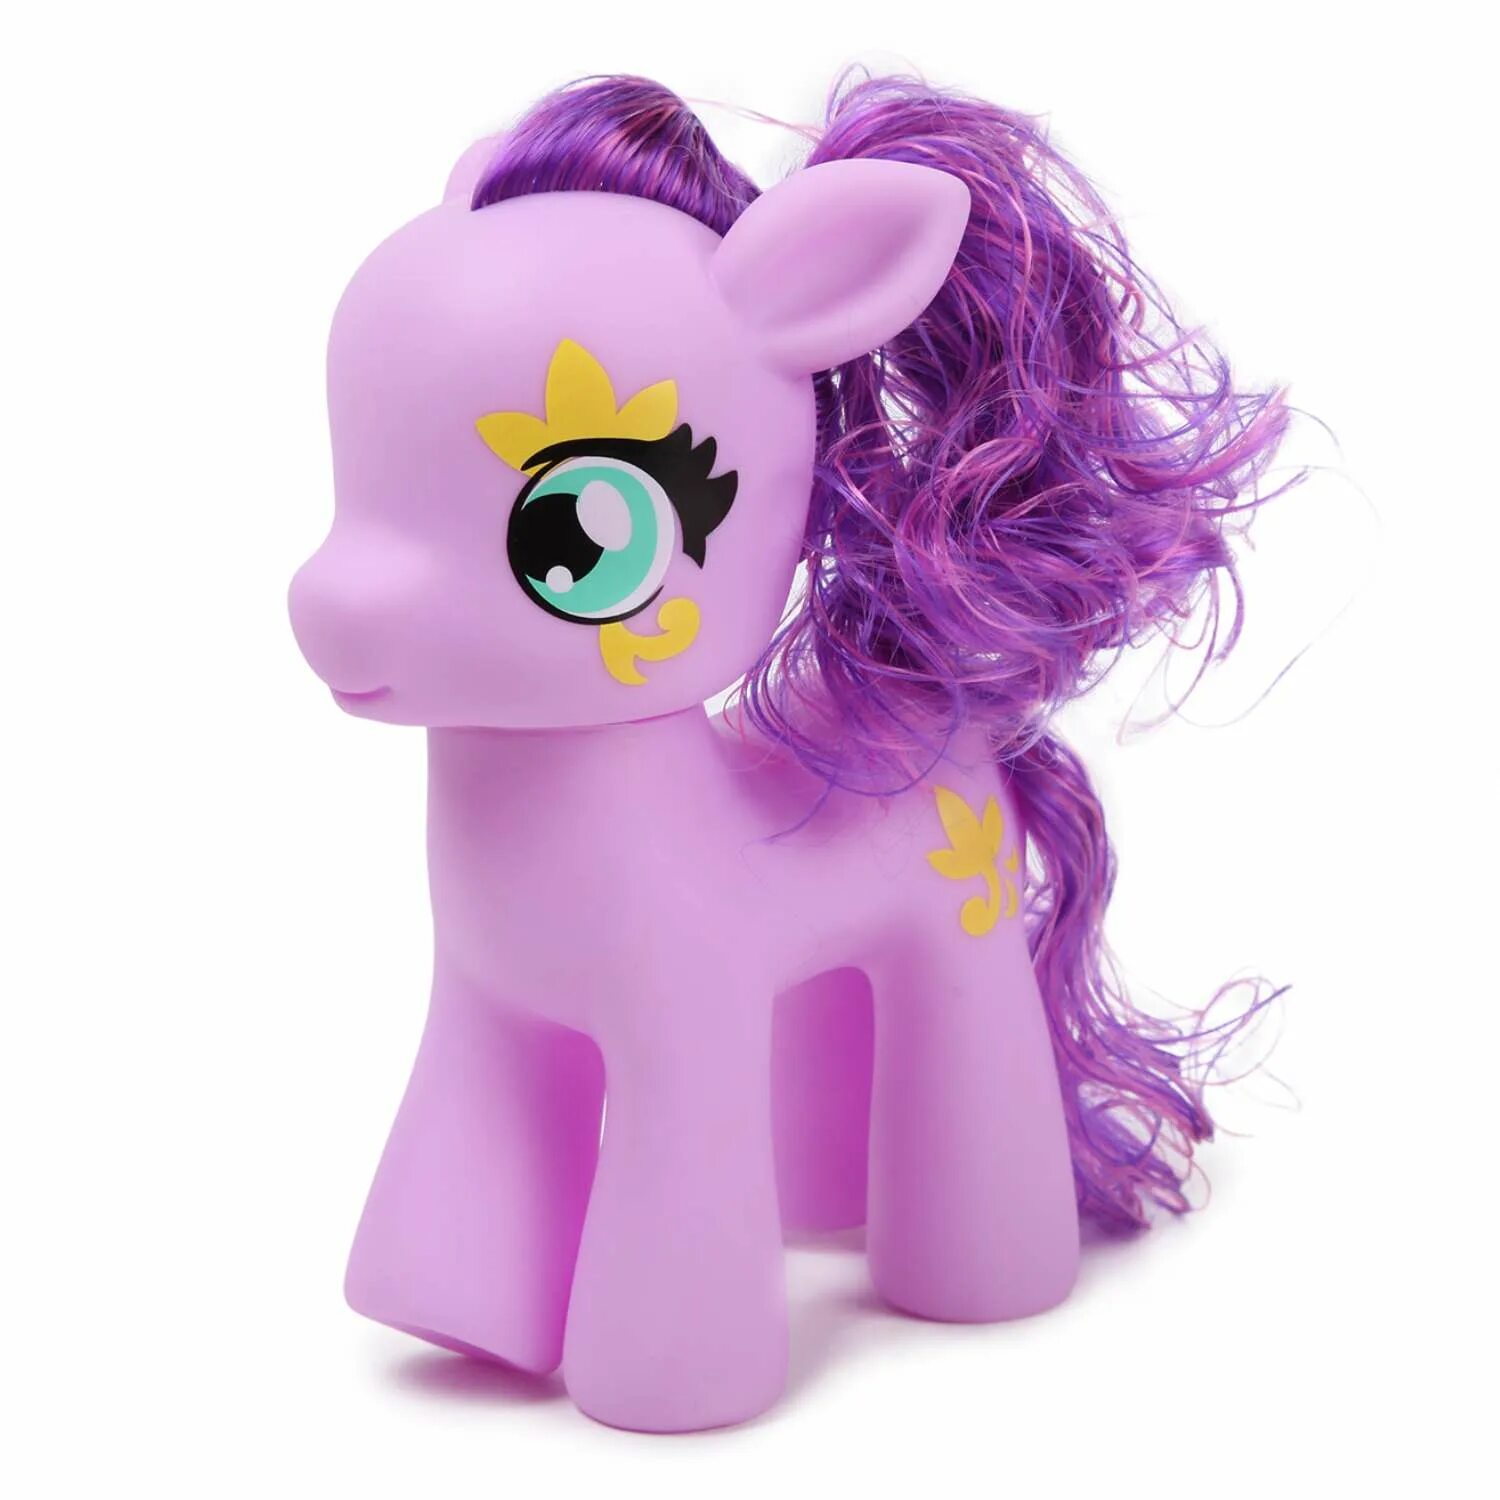 Demi Star пони фиолетовый. Набор пони Demi Star. Пони с сиреневыми волосами. Фиолетовая пони игрушка. Star pony